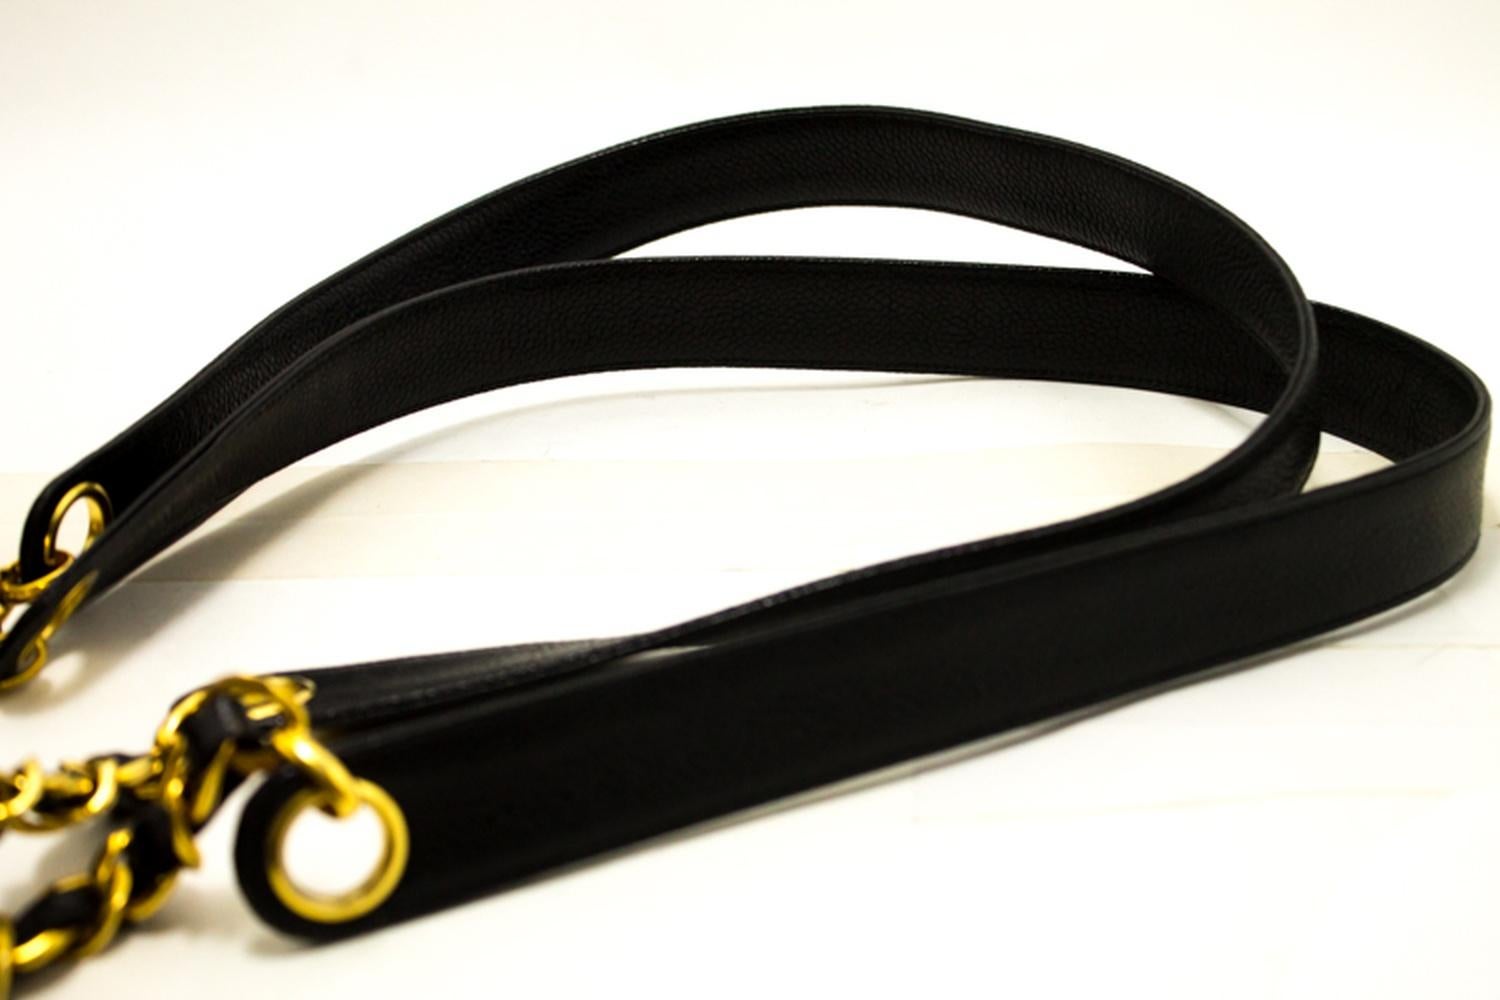 CHANEL Caviar Chain Shoulder Bag Black Leather Gold Hw CC Pocket 9